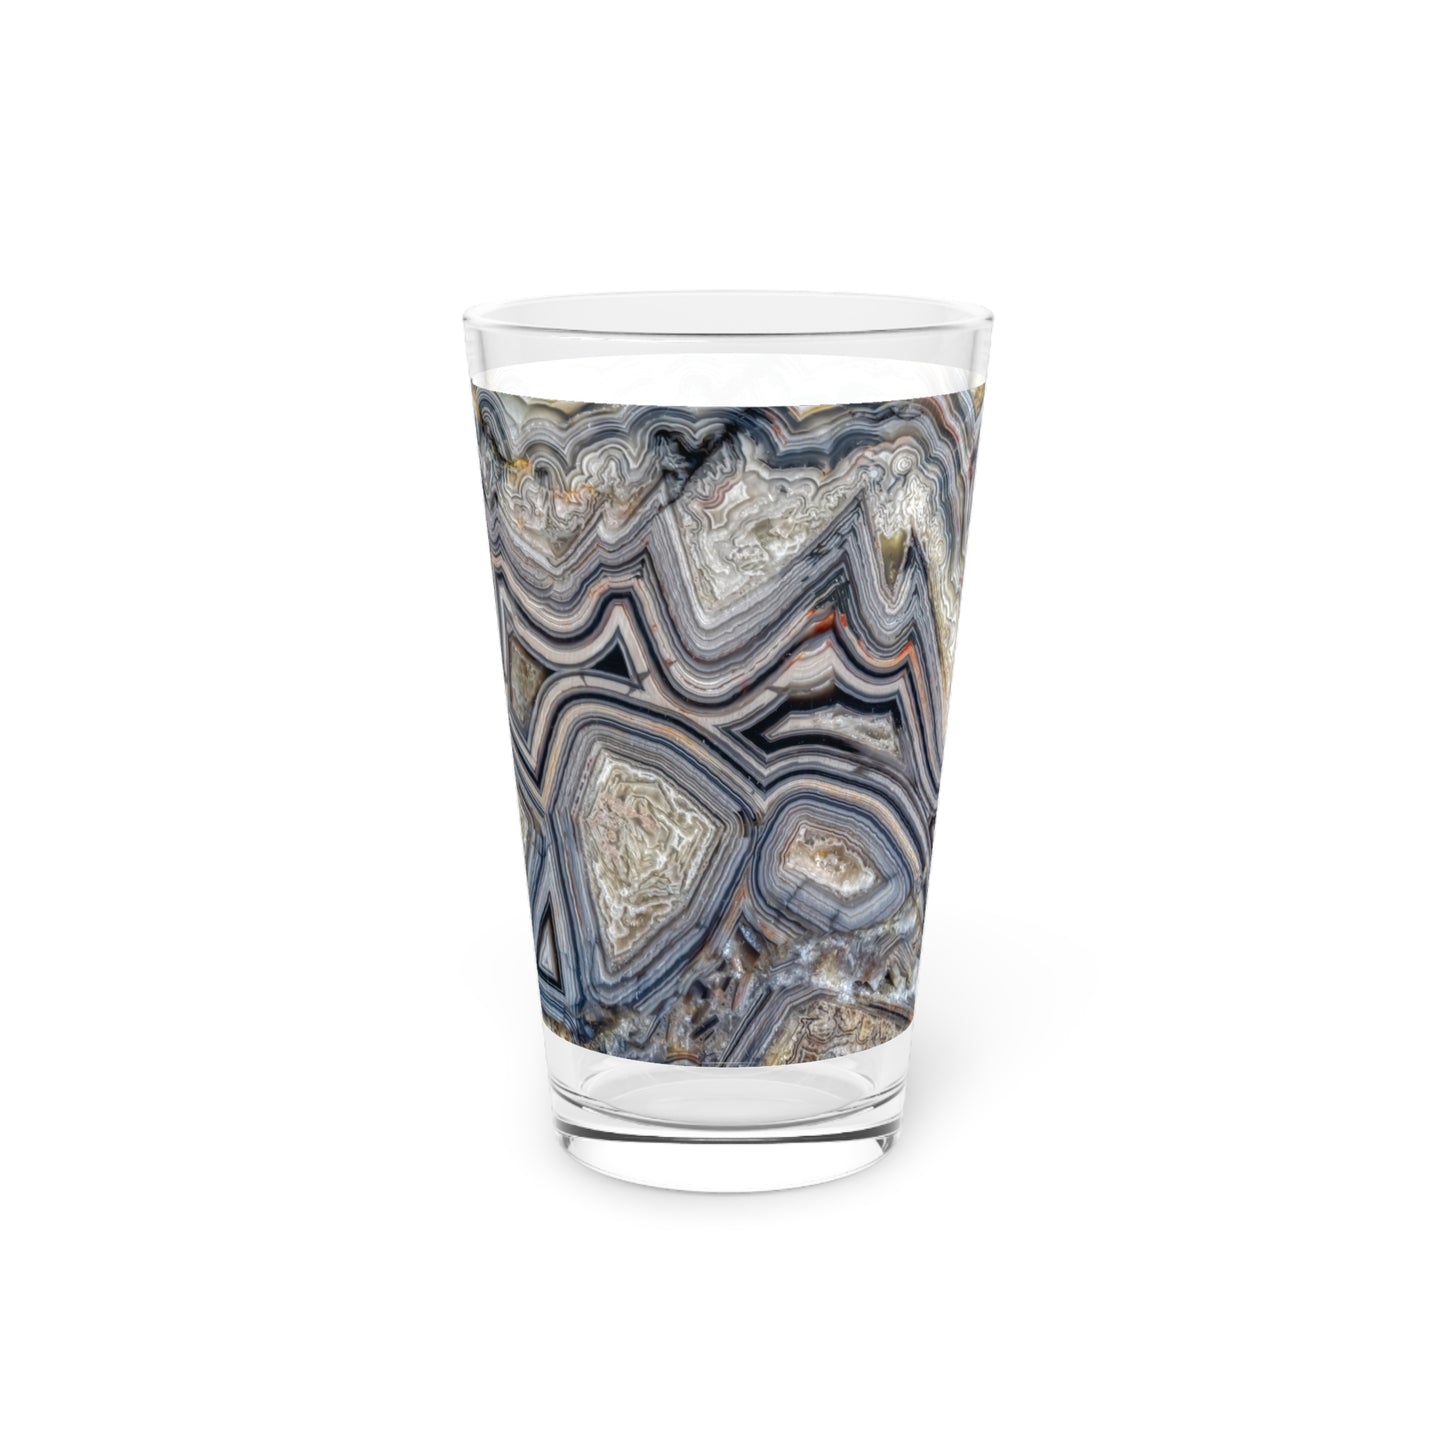 Crazy Lace Agate Optimism Pint Glass, 16oz